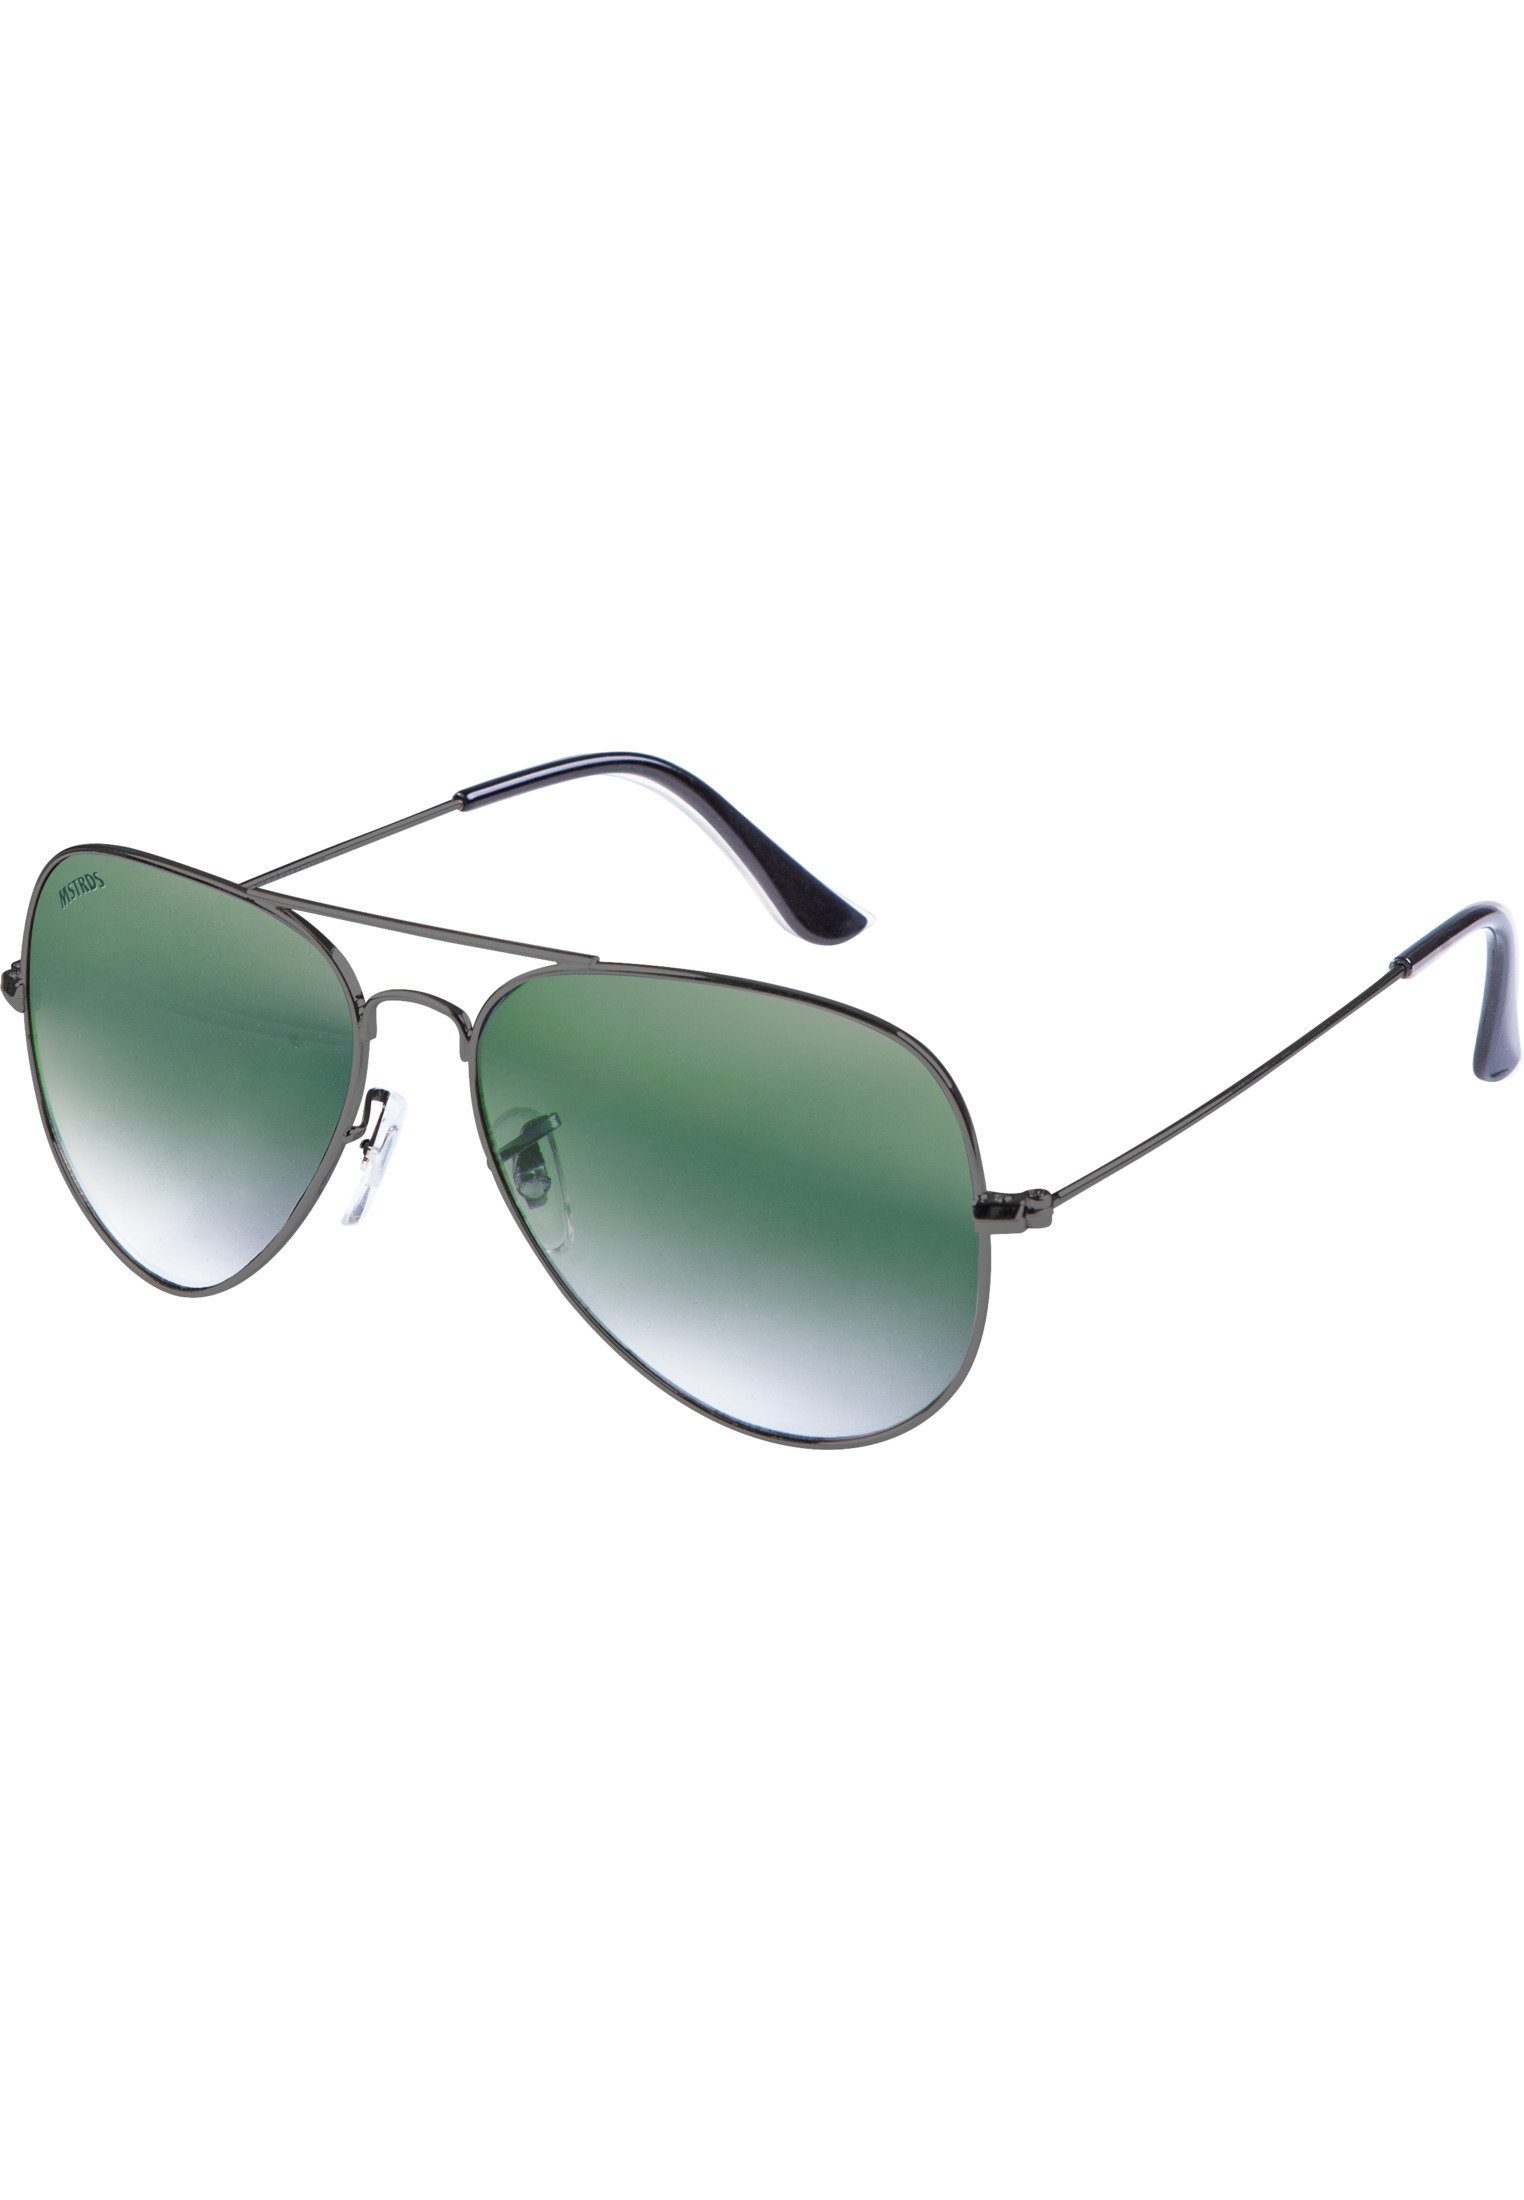 MSTRDS Sonnenbrille Accessoires PureAv gun/green Sunglasses